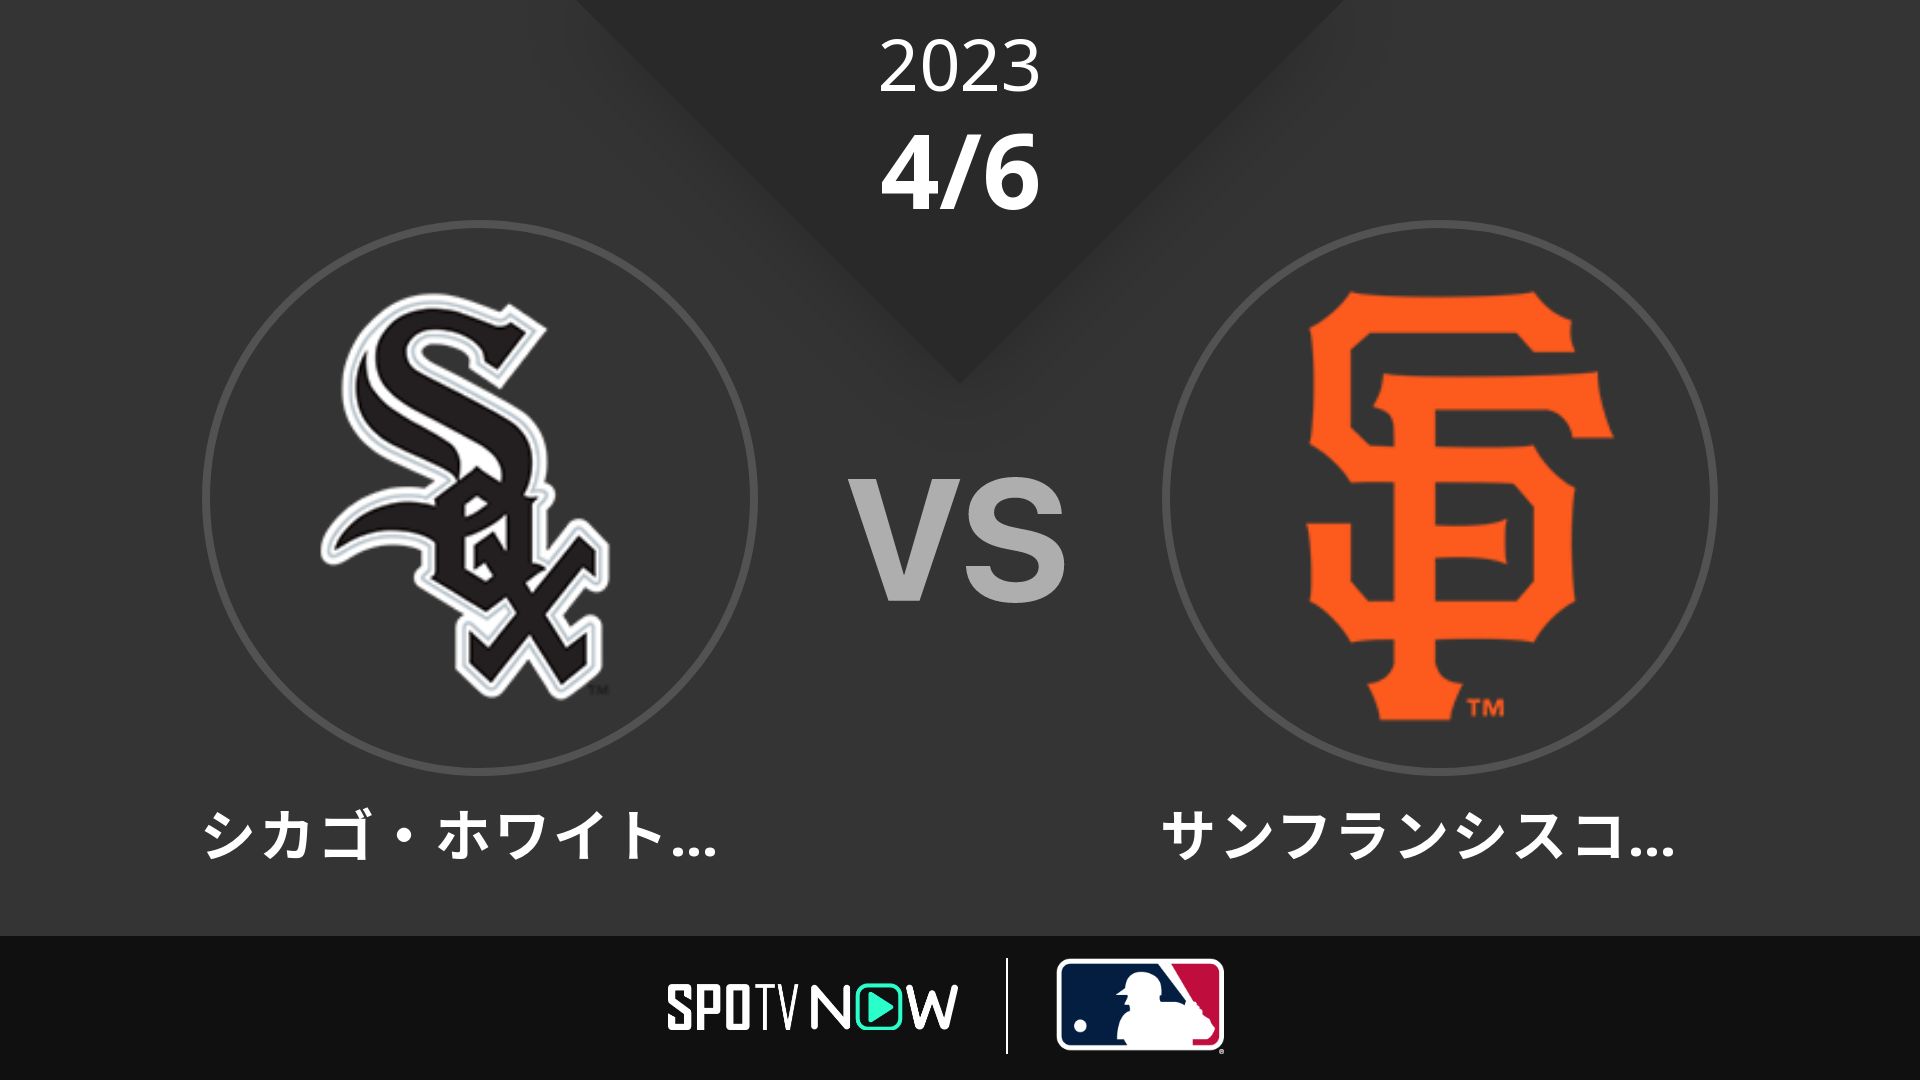 2023/4/6 Wソックス vs ジャイアンツ [MLB]